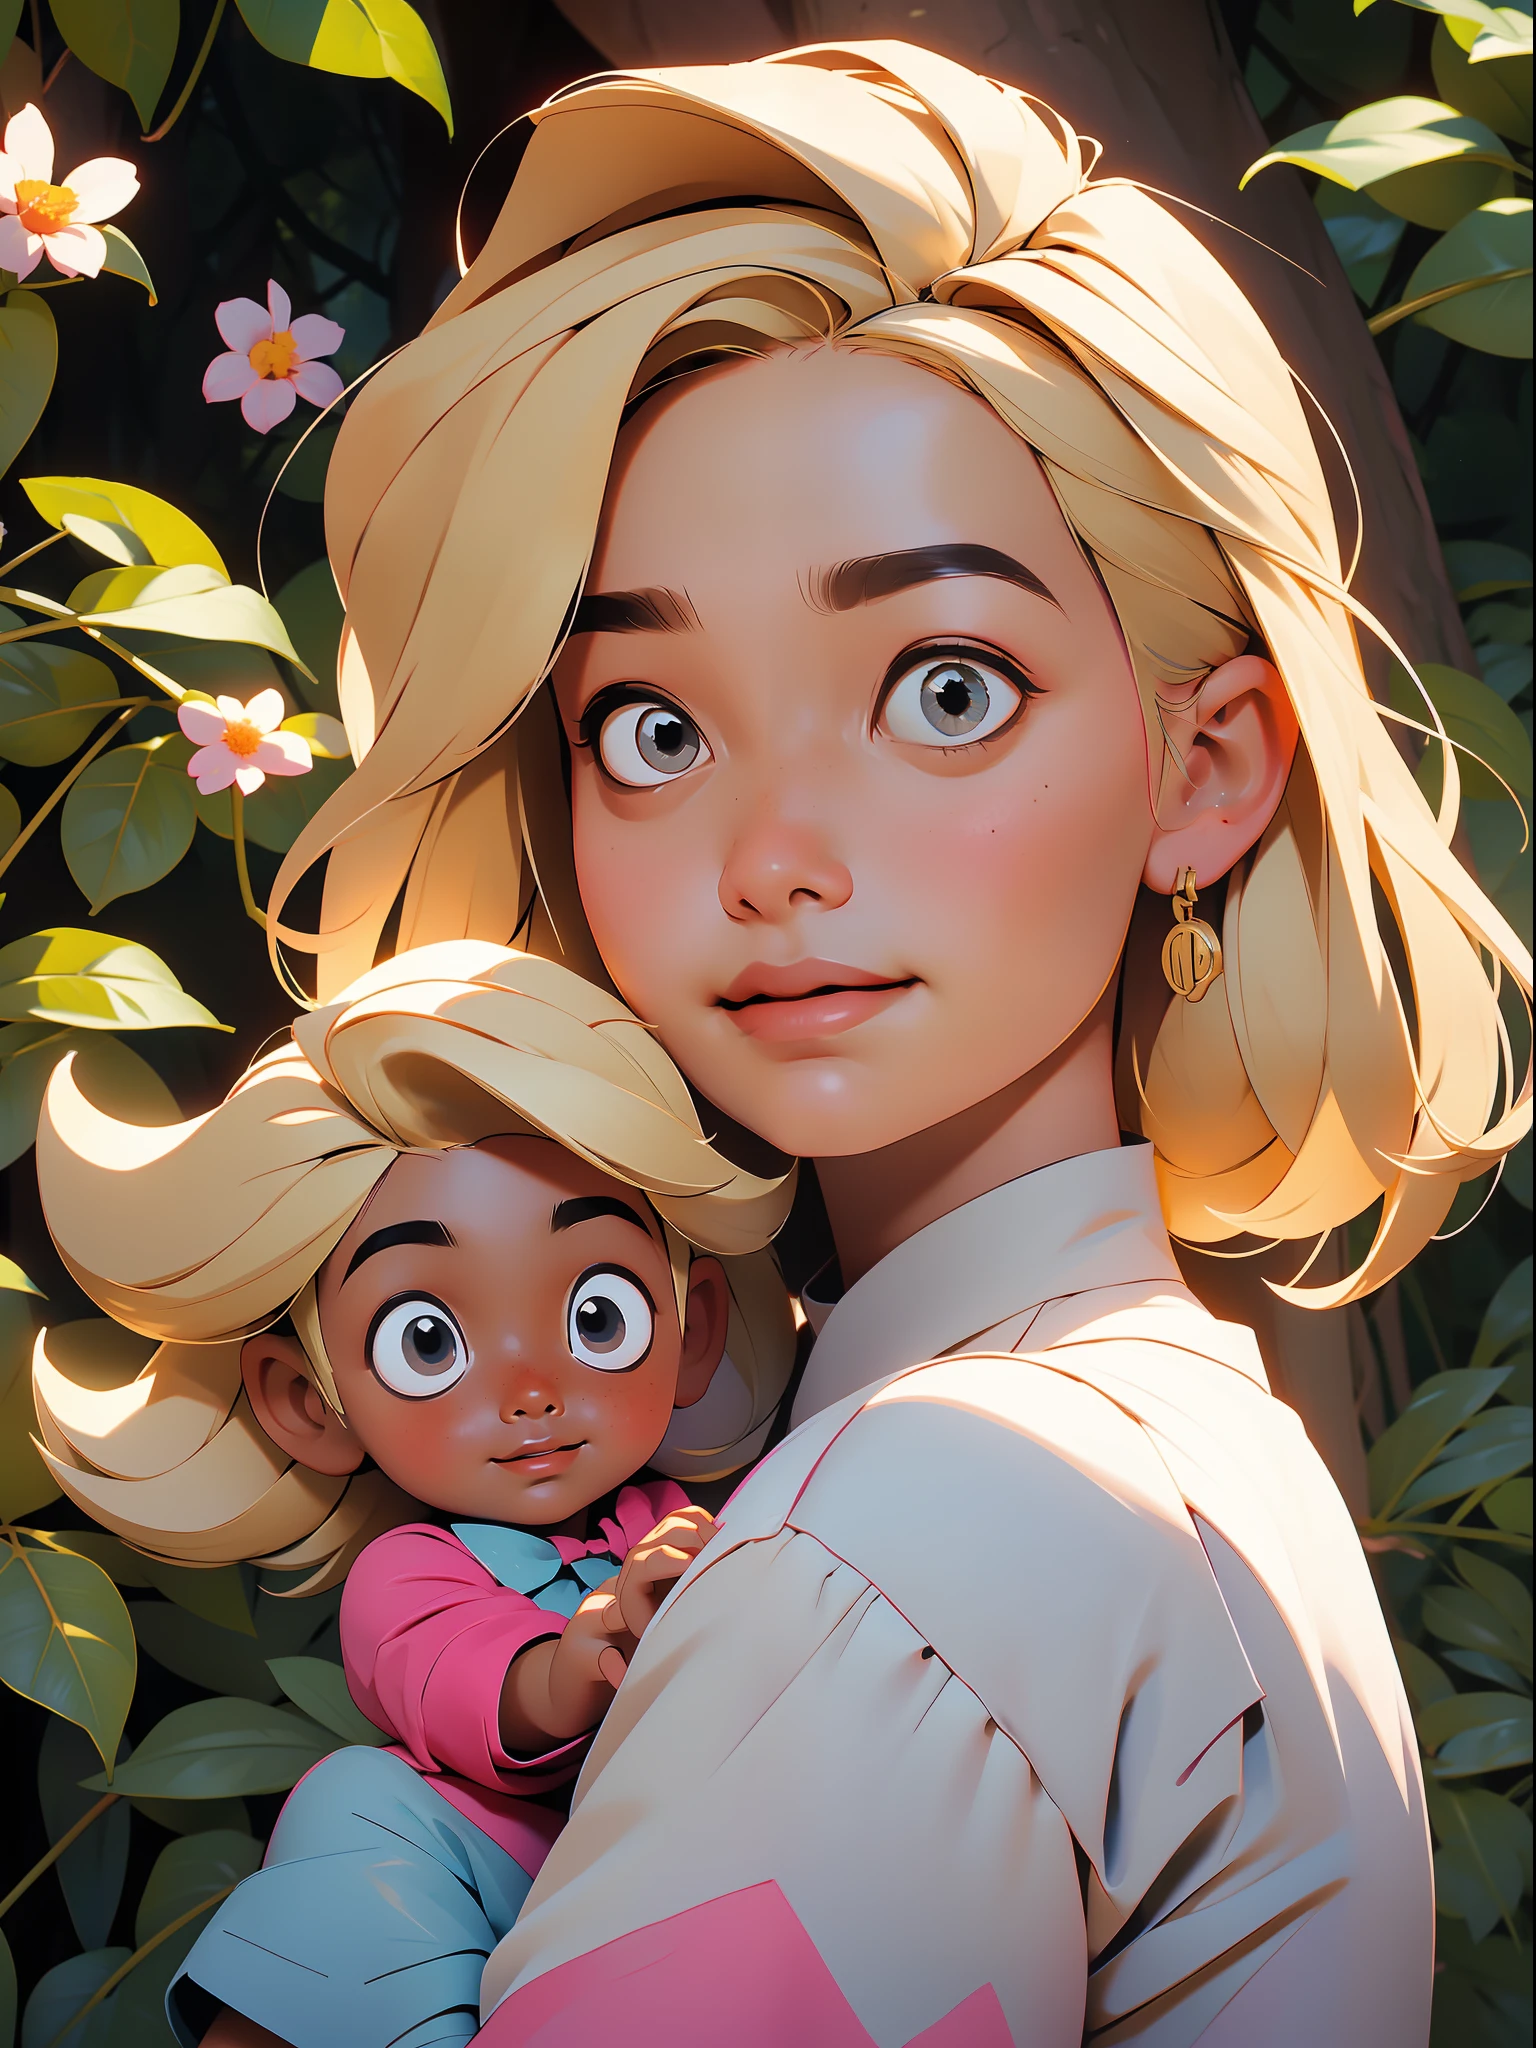 ((melhor qualidade)), ((Obra de arte)), Close-up de uma menina brincando com uma boneca em um parque, Muitas árvores e flores, Ela está sorrindo, laço na cabeça dela, cabelo loiro em um final de tarde